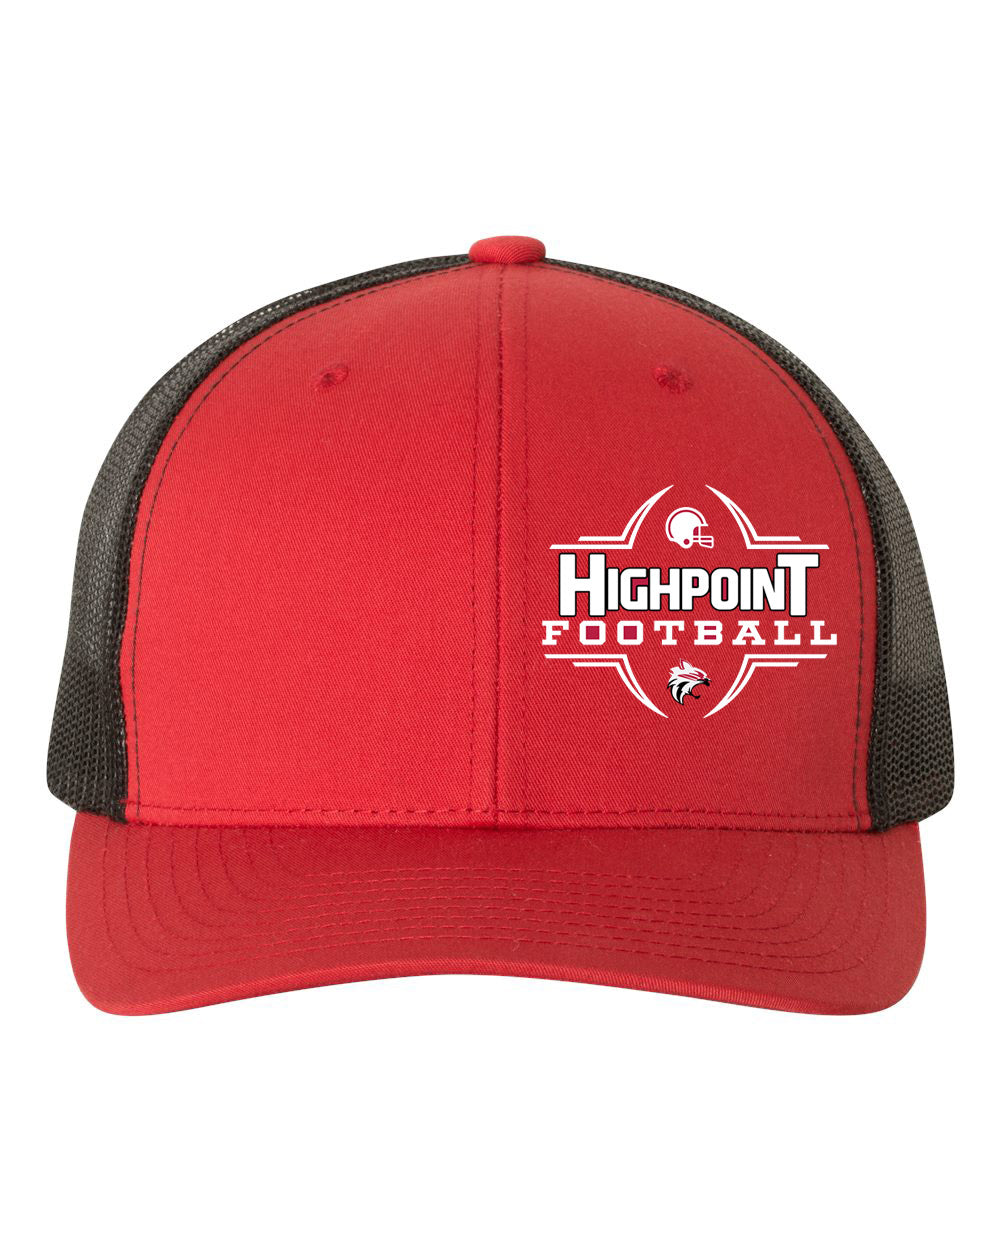 High Point Design 6 Trucker Hat